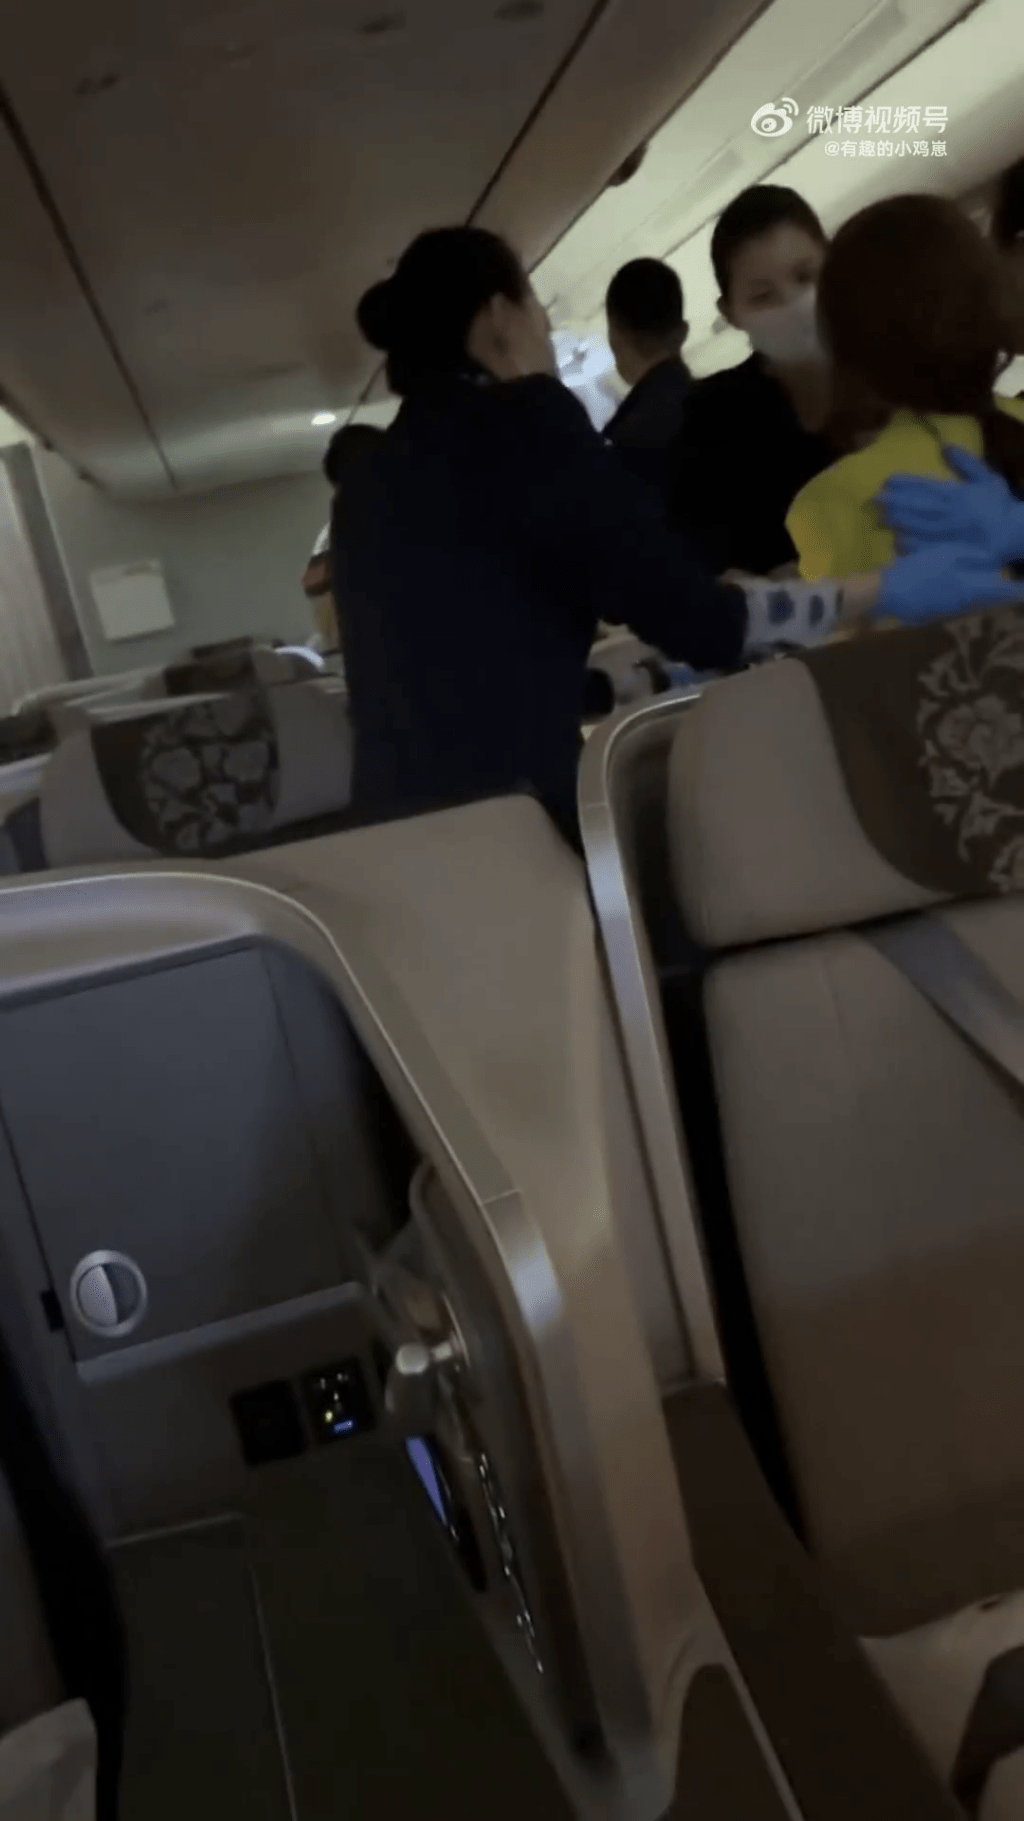 同机女乘客（黄衫）不满时间被耽误，与之发生口角冲突，由机组人员安慰。